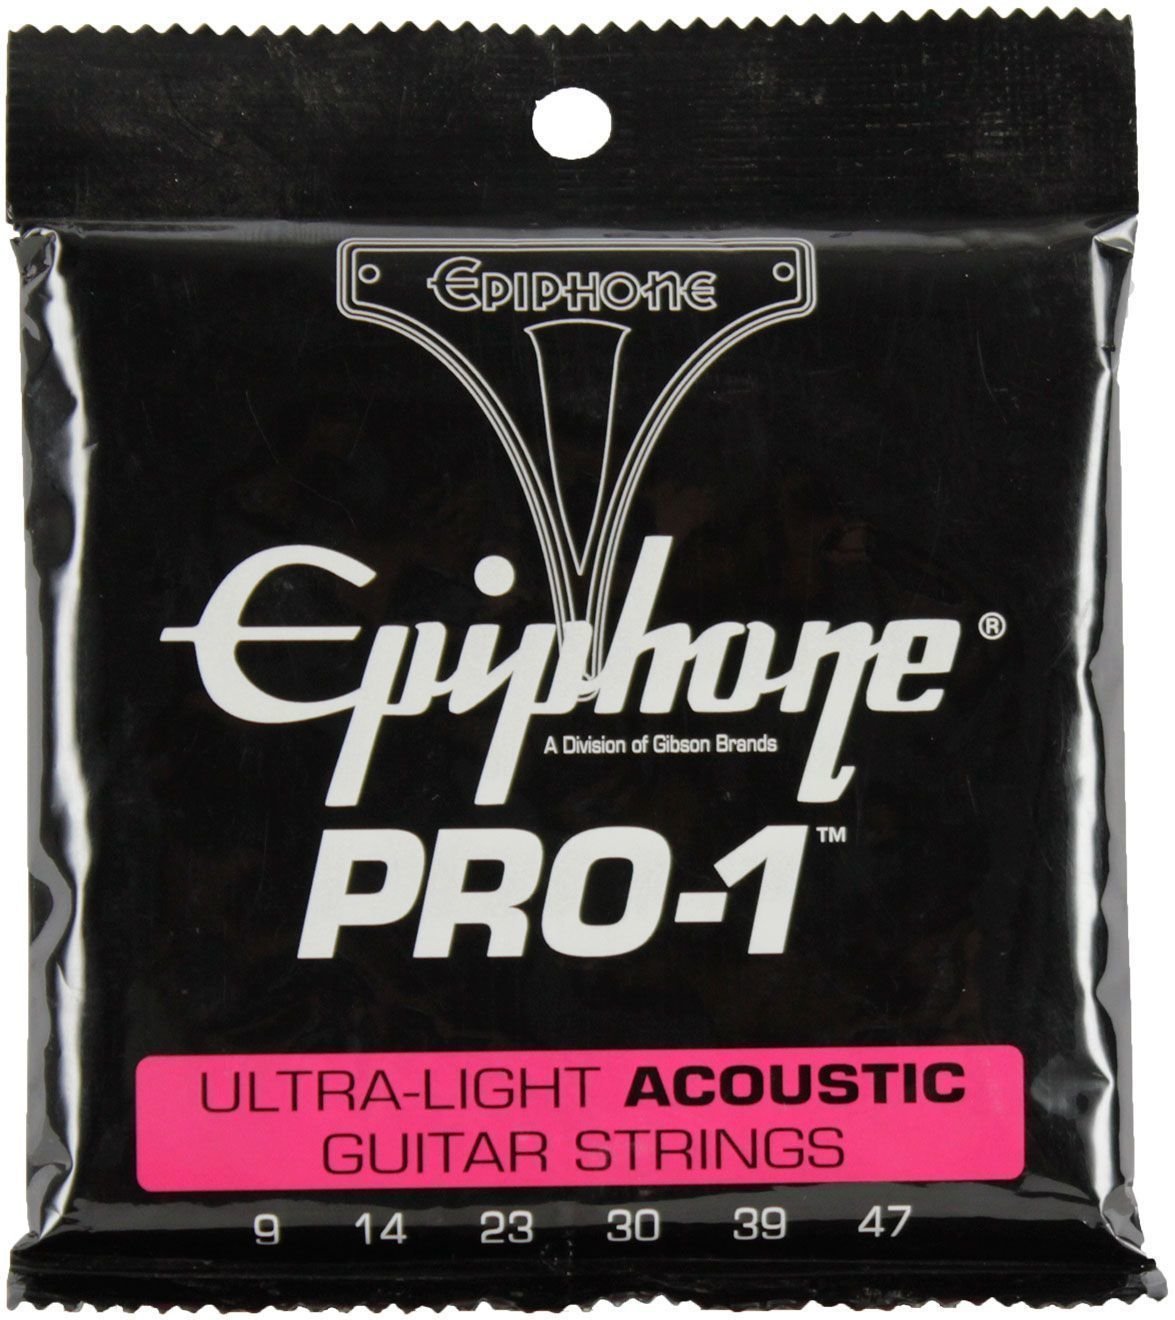 Struny do gitary akustycznej Epiphone Pro-1 Ultra-Light Acoustic Strings